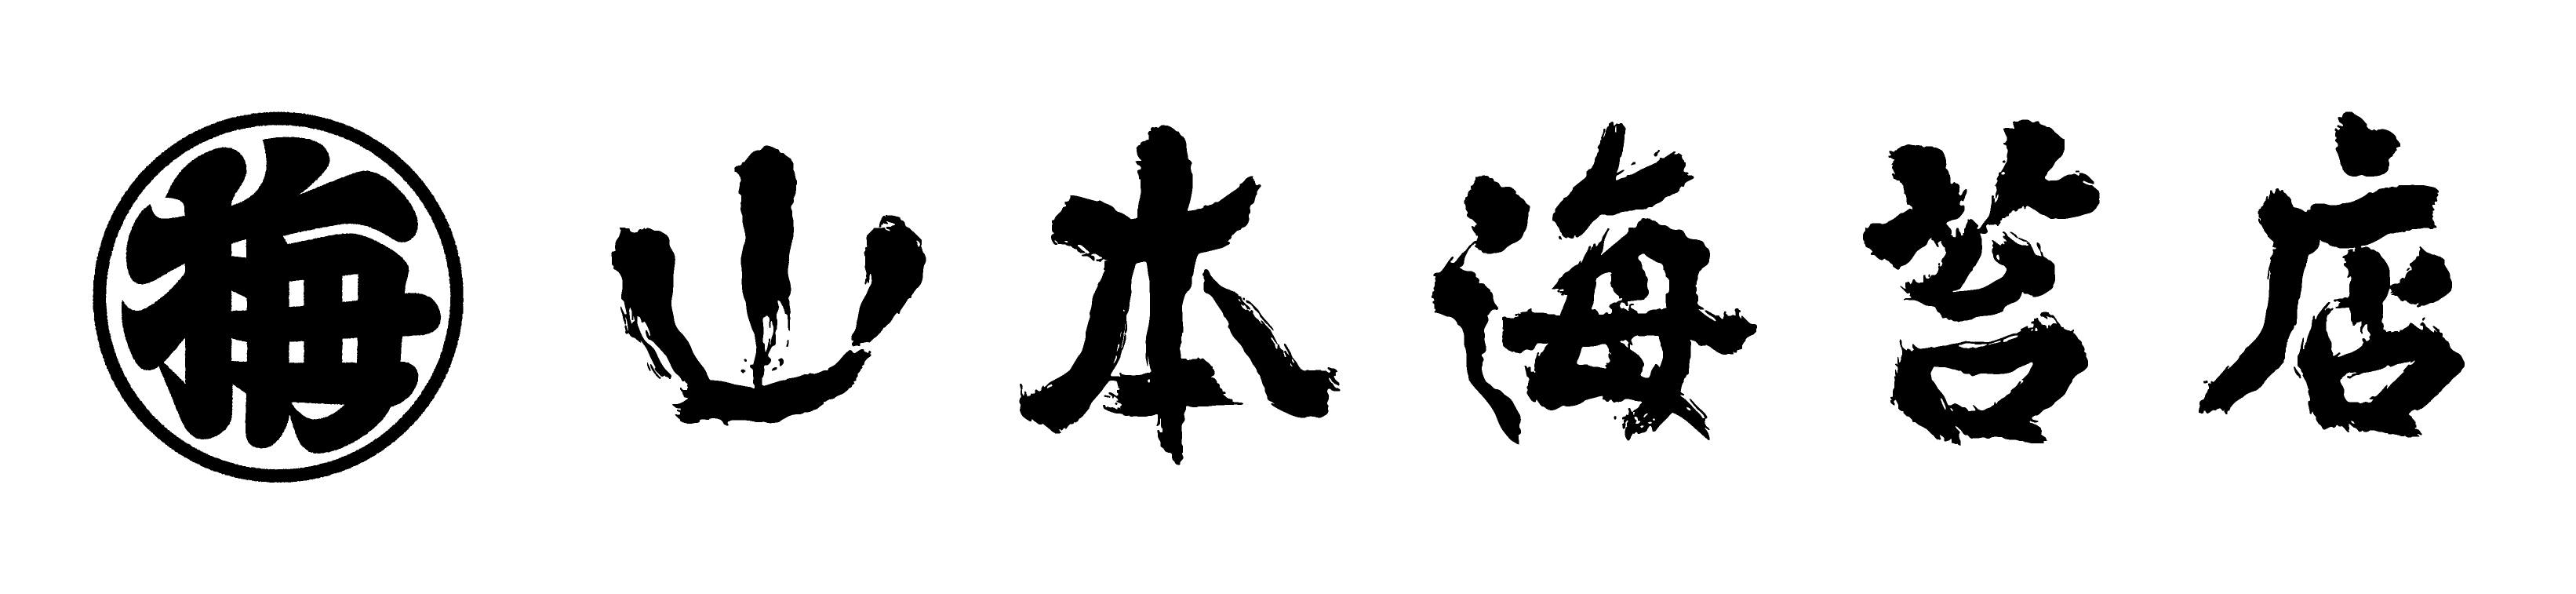 シナモロール」デビュー20周年を記念したのりチップス登場 山本海苔店からオリジナルデザインで5月23日販売開始｜株式会社山本海苔店のプレスリリース